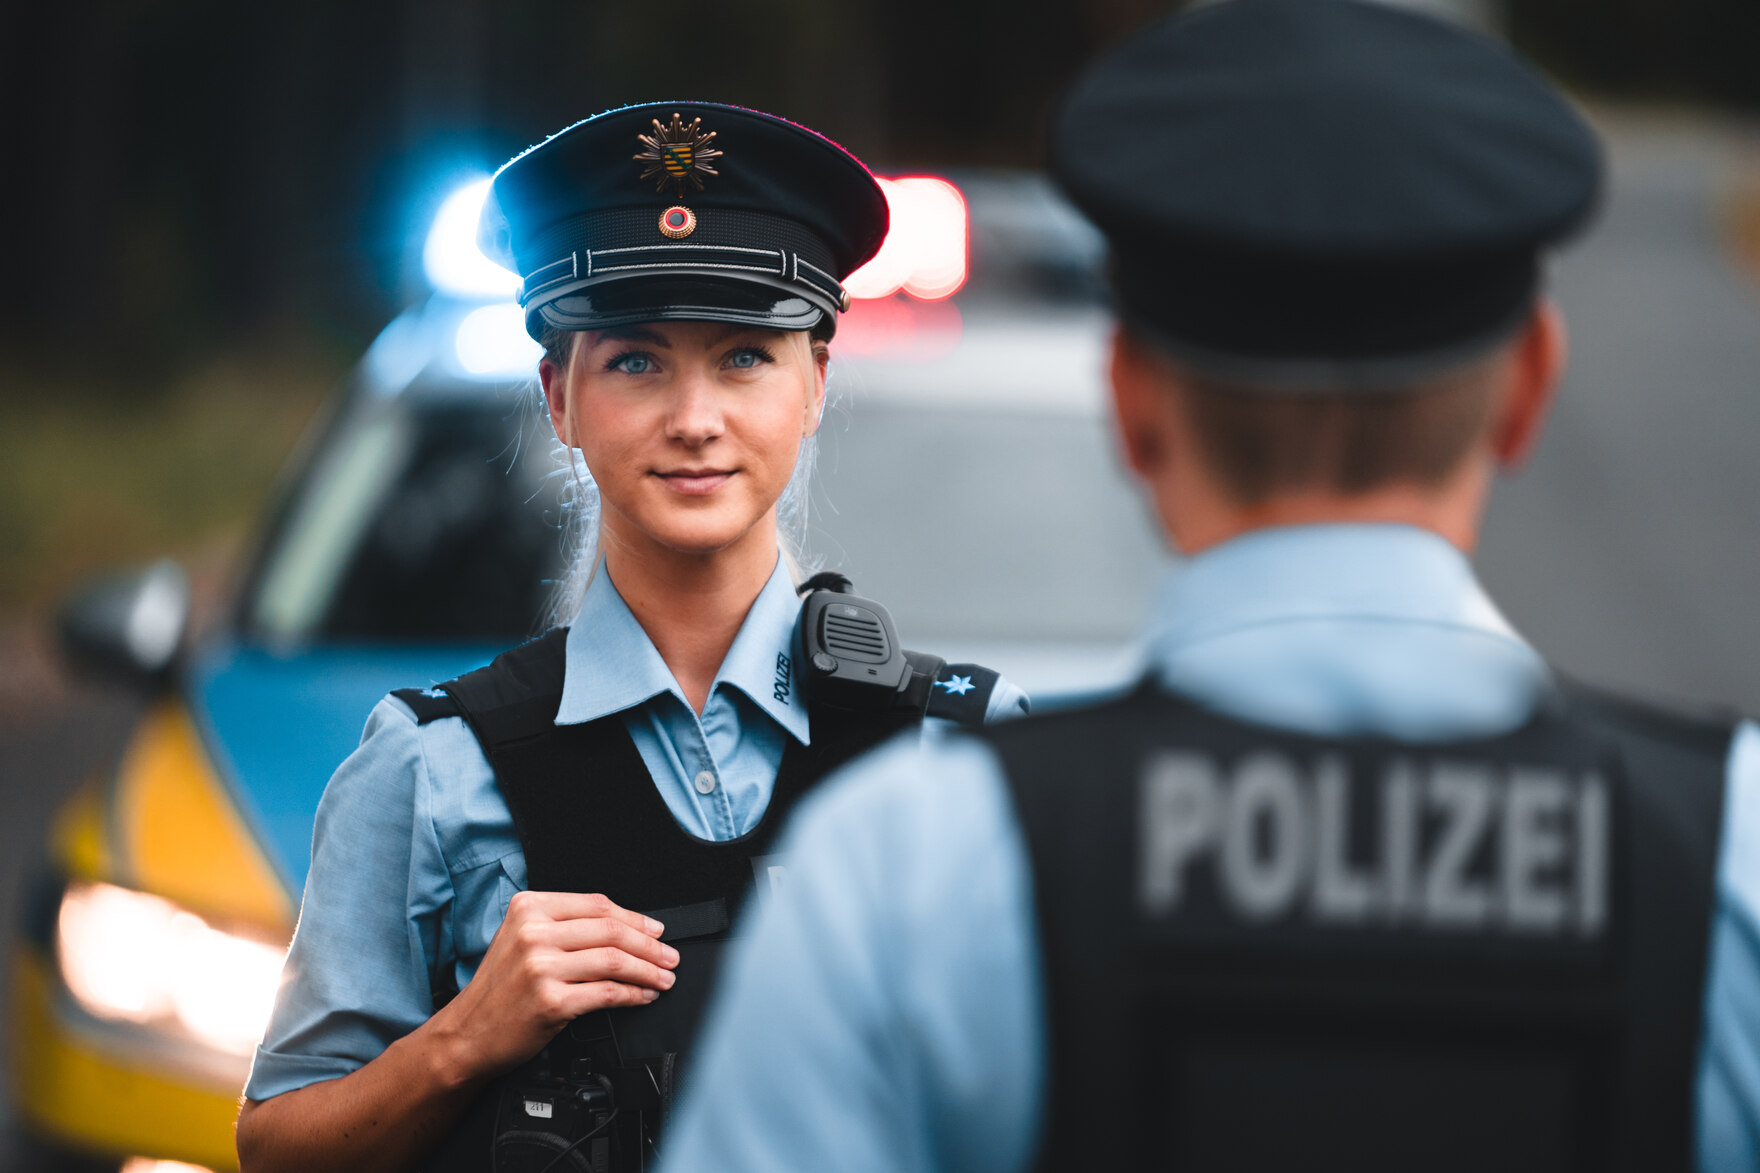 Polizei - Karriere - sachsen.de